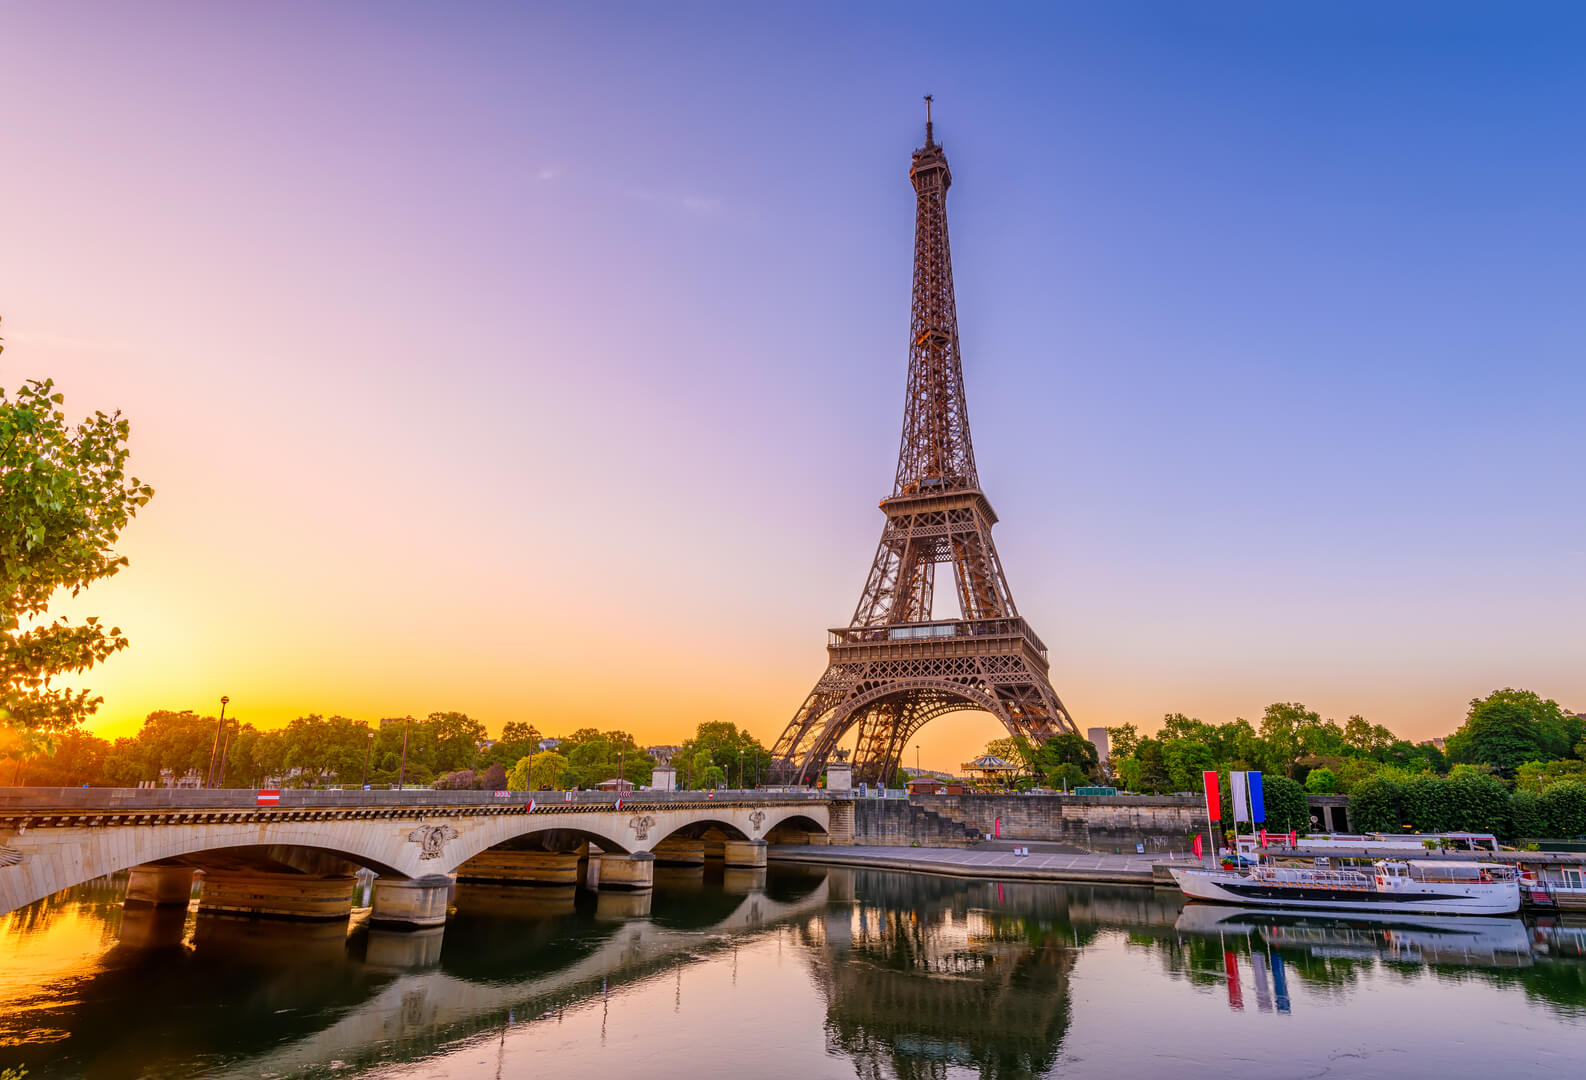 Vue sur la Tour Eiffel et la Seine au lever du soleil à Paris, France. La Tour Eiffel est l'un des monuments les plus emblématiques de Paris. Architecture et monuments de Paris. Carte postale de Paris